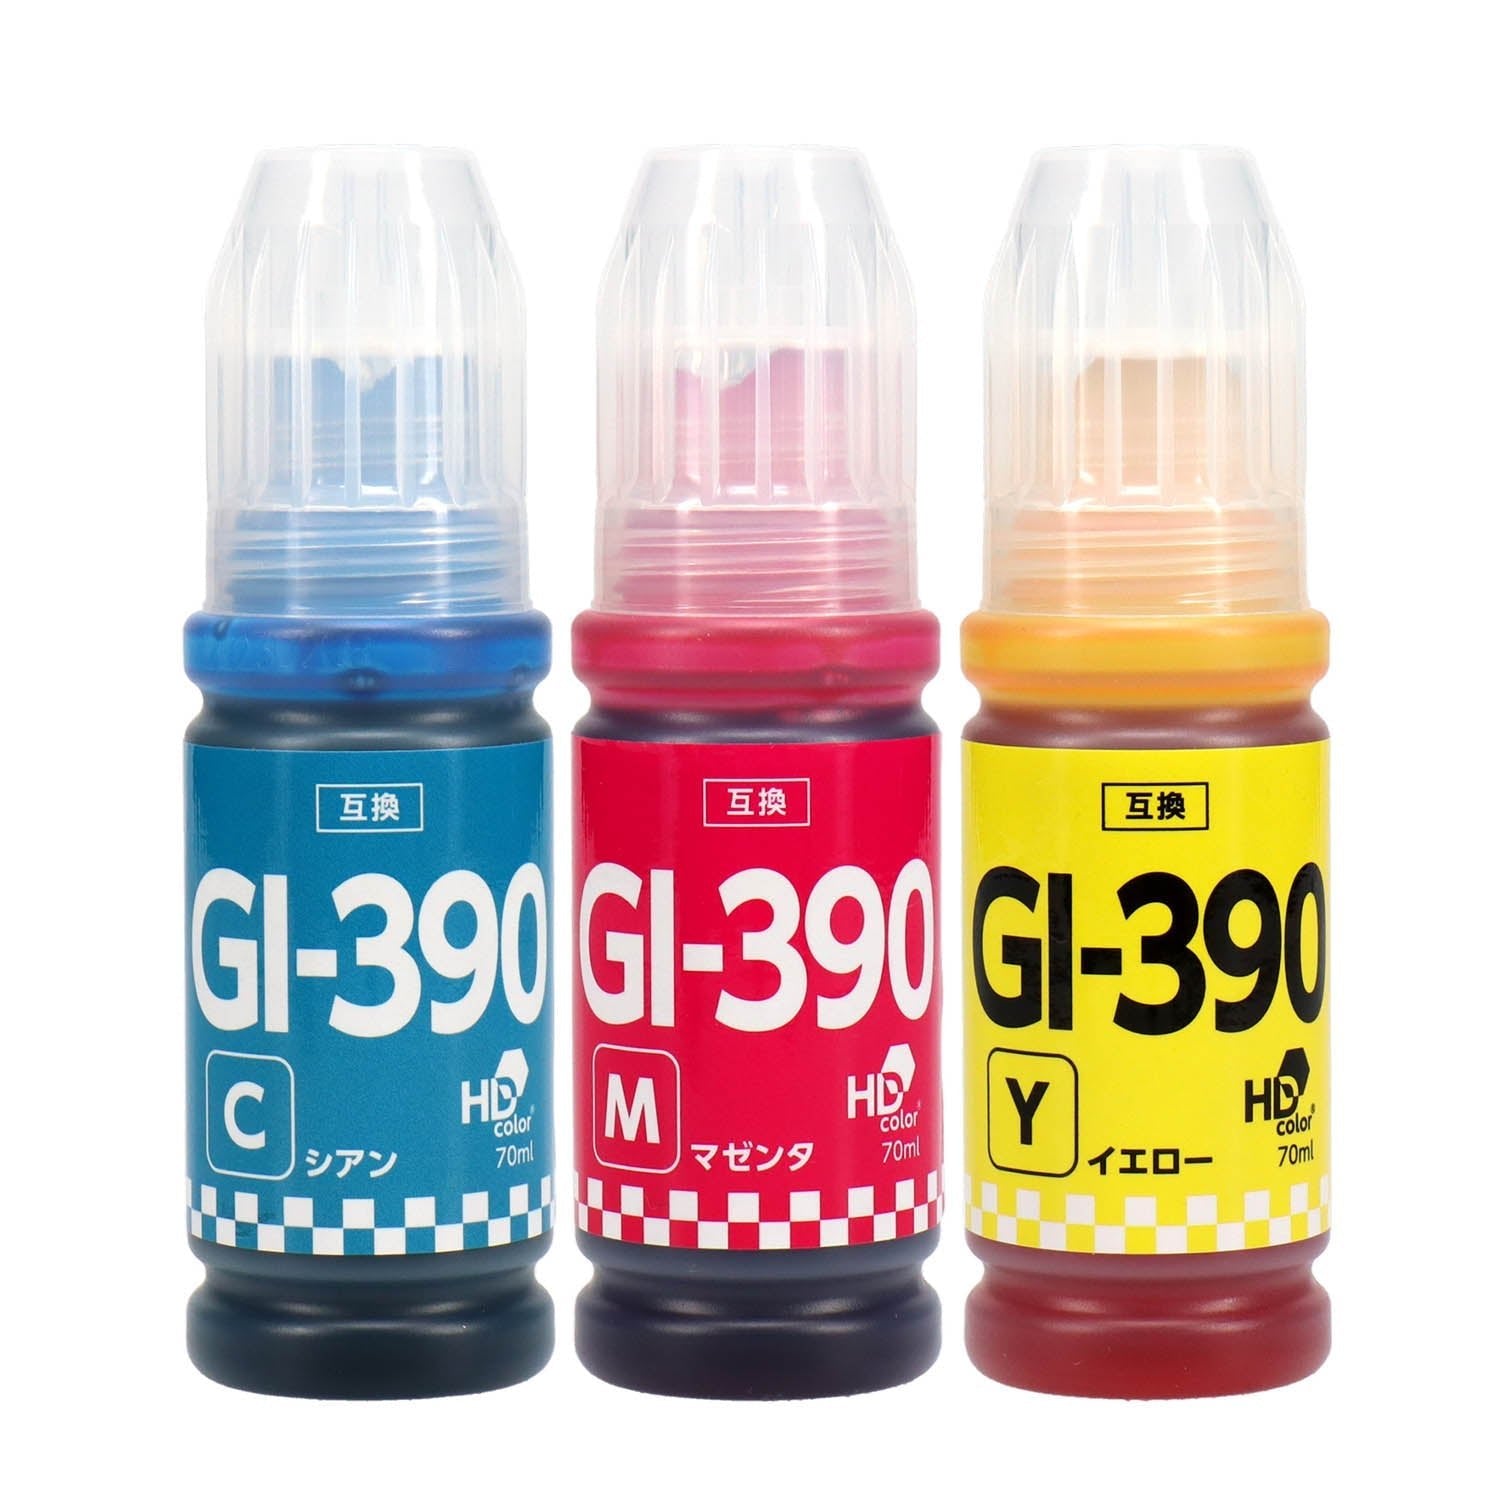 キヤノン用 GI-390 互換インクボトル カラー3色